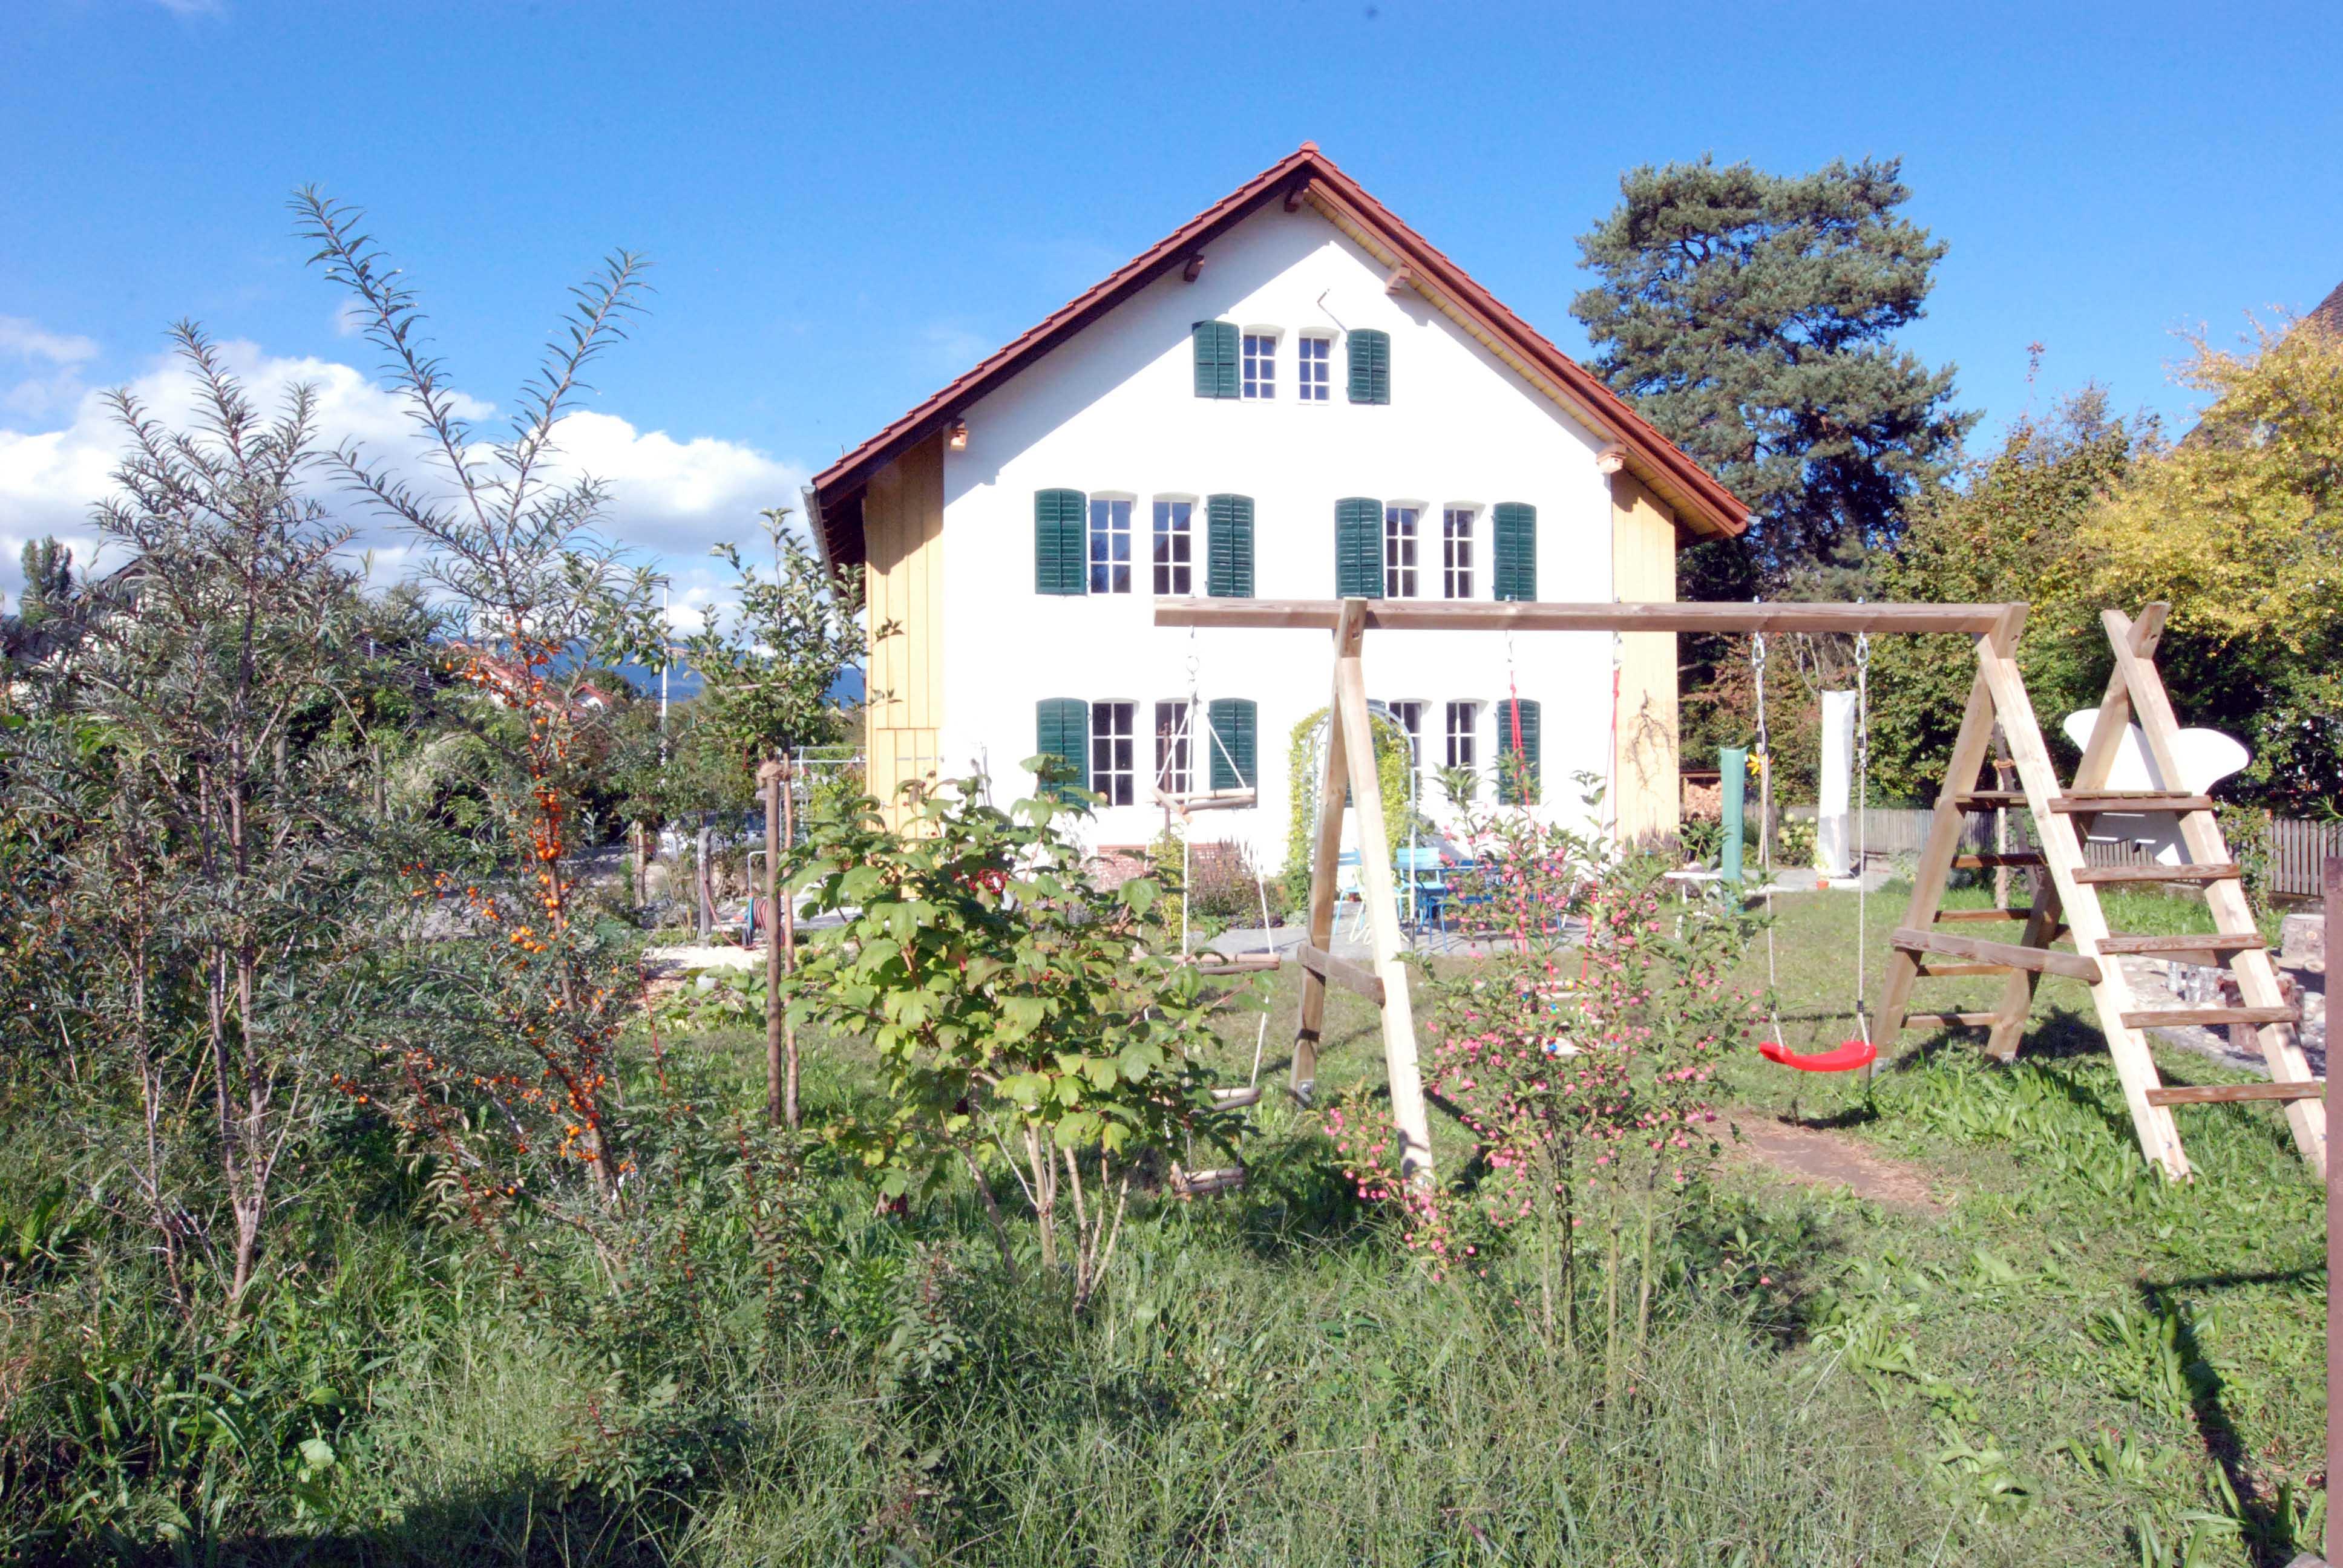 Architektur-Reportage Derendingen Elsässli: Blick auf grossen Garten mit Kinderschaukel